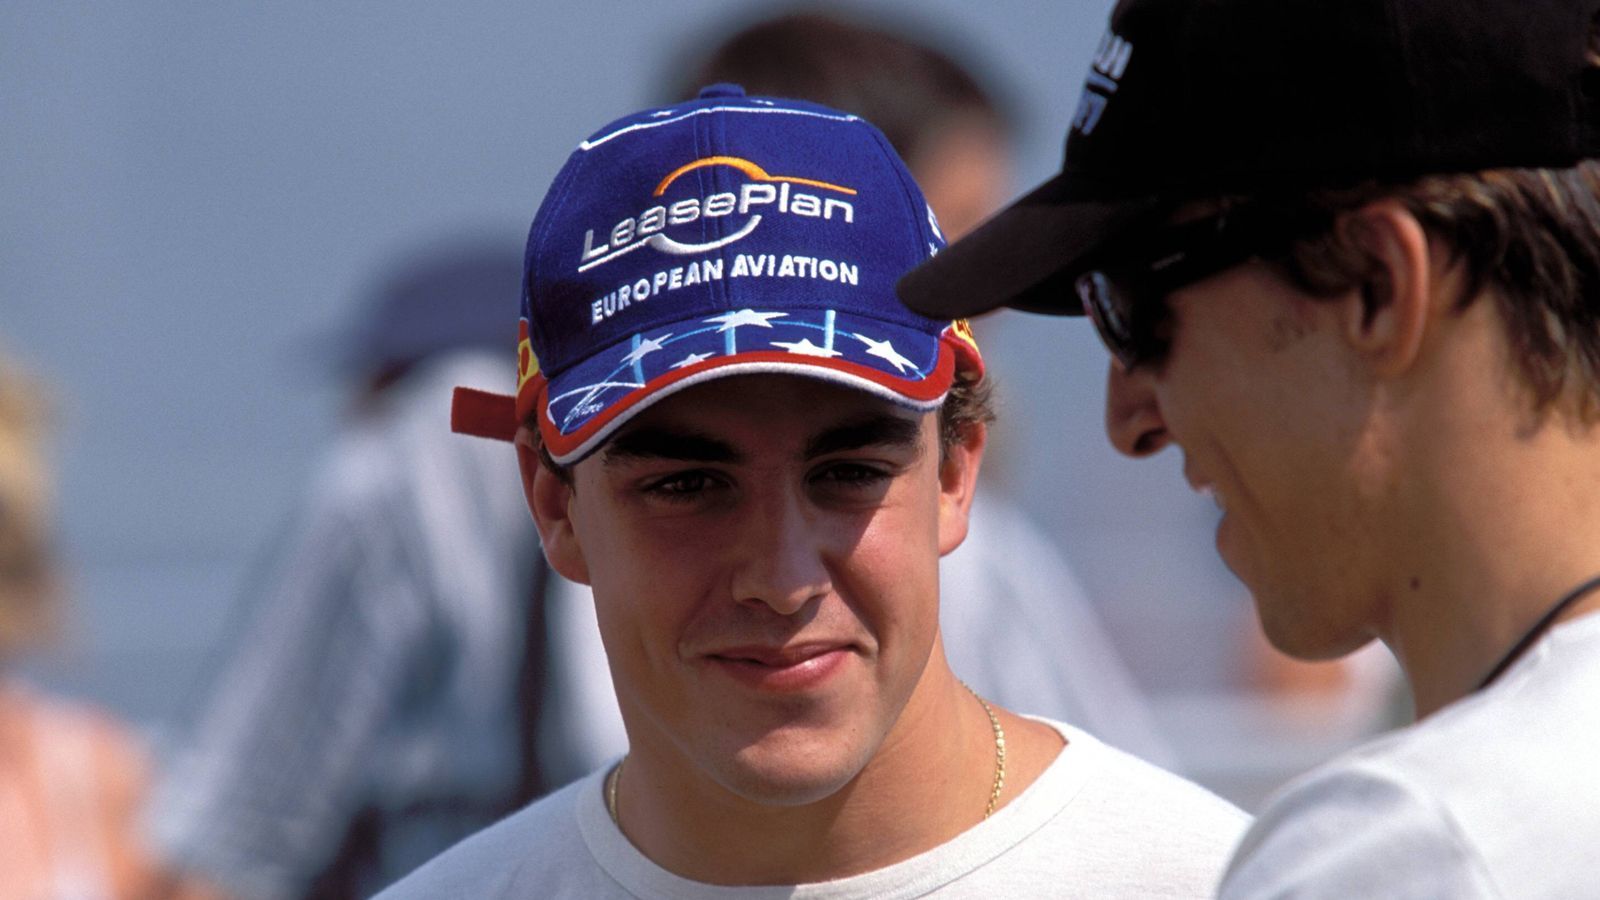 
                <strong>Formel 1: Fernando Alonsos spektakuläre Karriere</strong><br>
                Es ist 2001, als ein schüchterner Junge aus Oviedo erstmals das Formel-1-Fahrerlager als Stammpilot betritt. Fernando Alonso feiert im Alter von 19 Jahren sein Debüt in der Königsklasse. Sein Manager Flavio Briatore verschafft ihm ein Cockpit bei Minardi. Alonso fährt wie erwartet nur hinterher, landet am Ende aufgrund der schlechteren Einzelergebnisse hinter seinem Teamkollegen Tarso Marques.
              